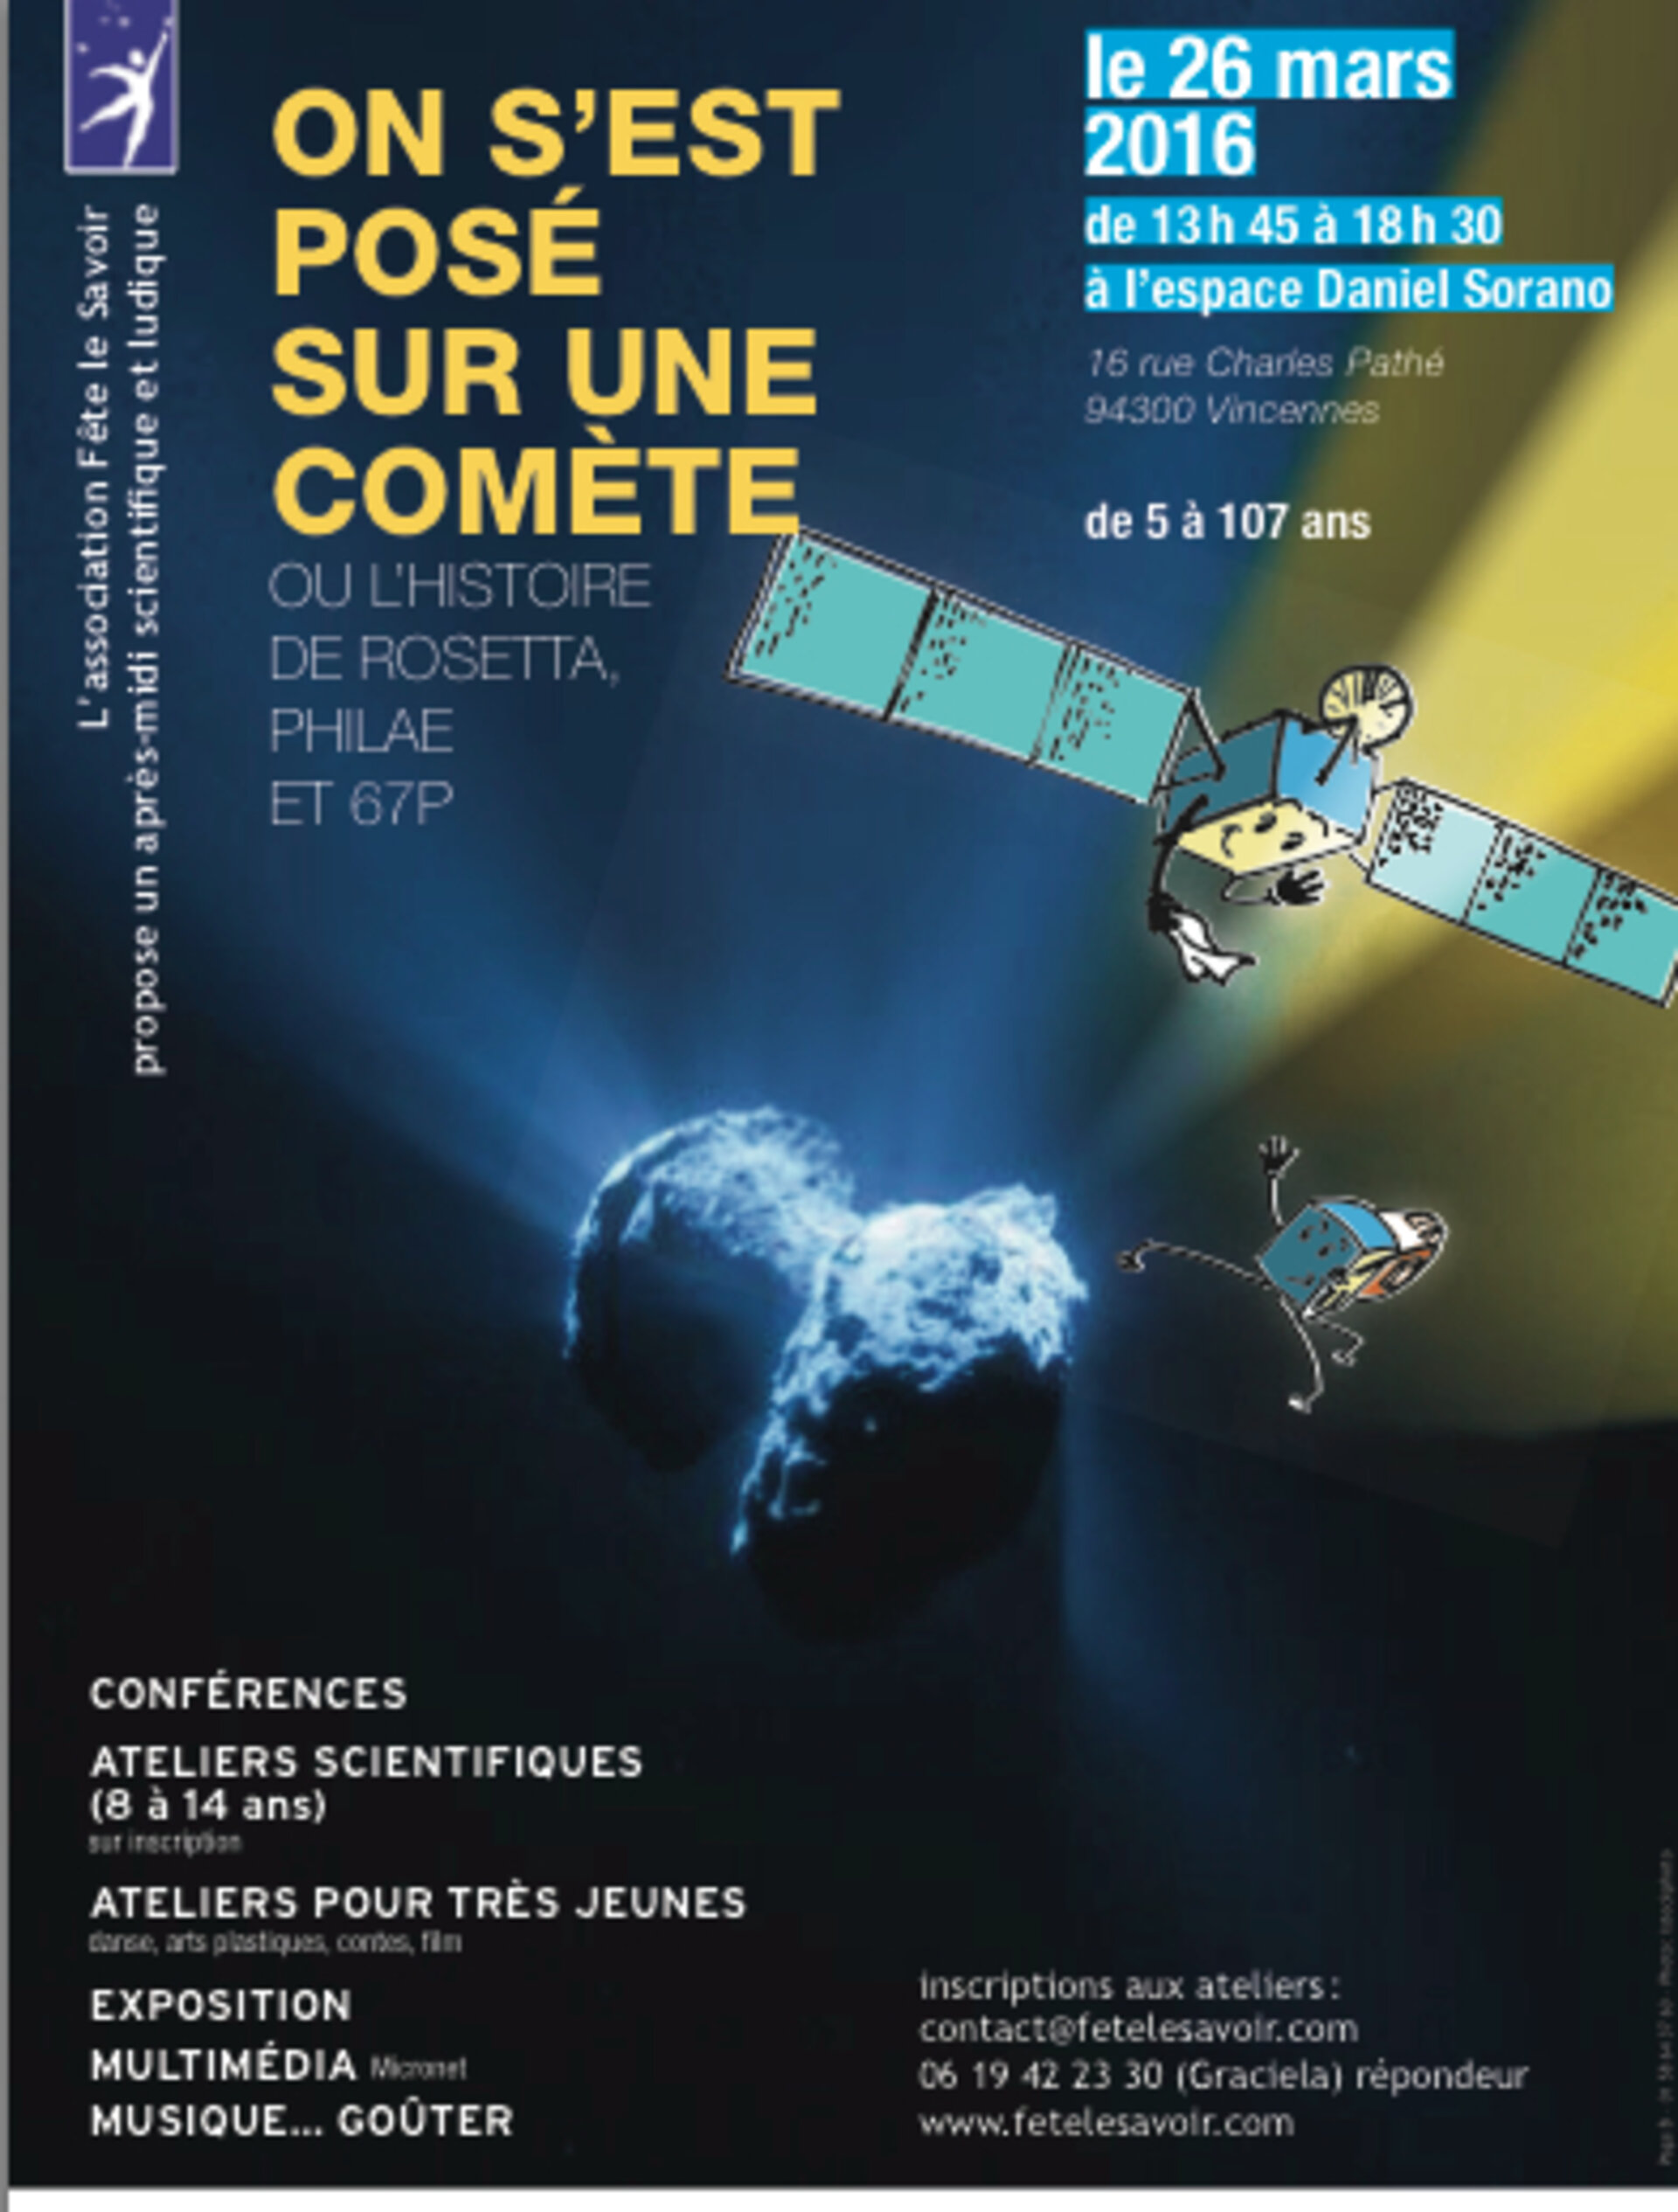 Fête le savoir : journée Rosetta à Vincennes